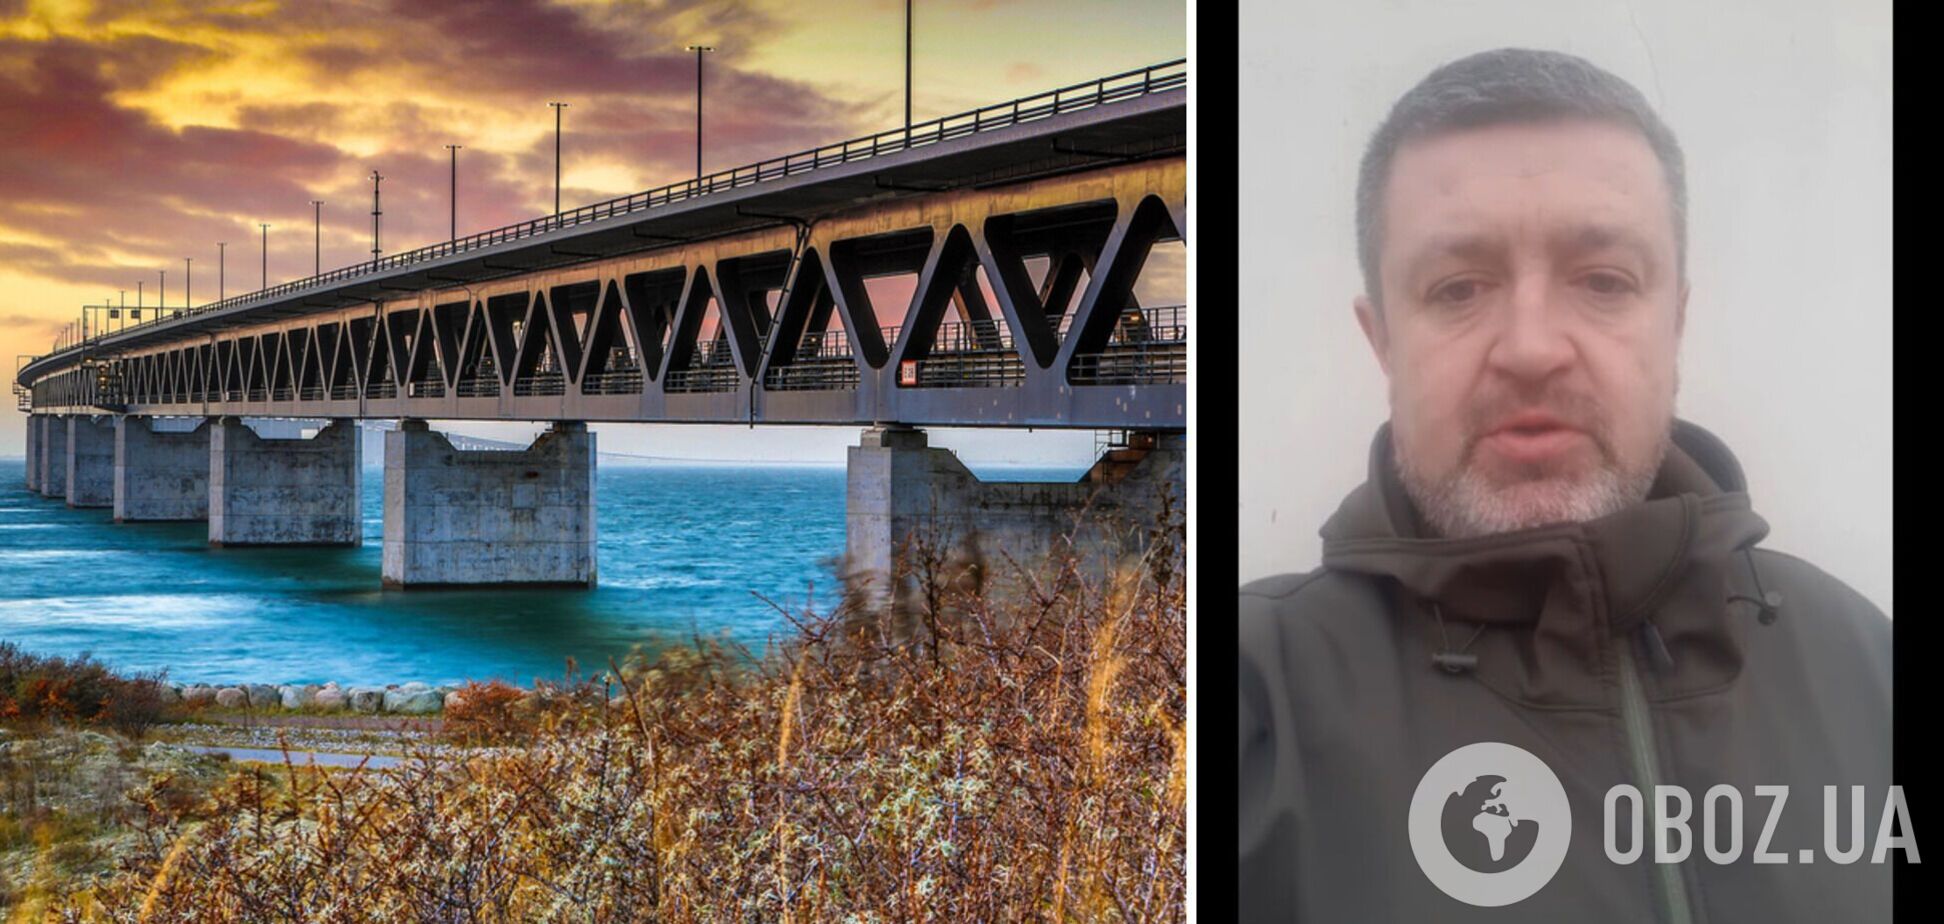 РФ нужен плацдарм: Братчук объяснил, чего добивается враг ударами по мосту над Днестровским лиманом